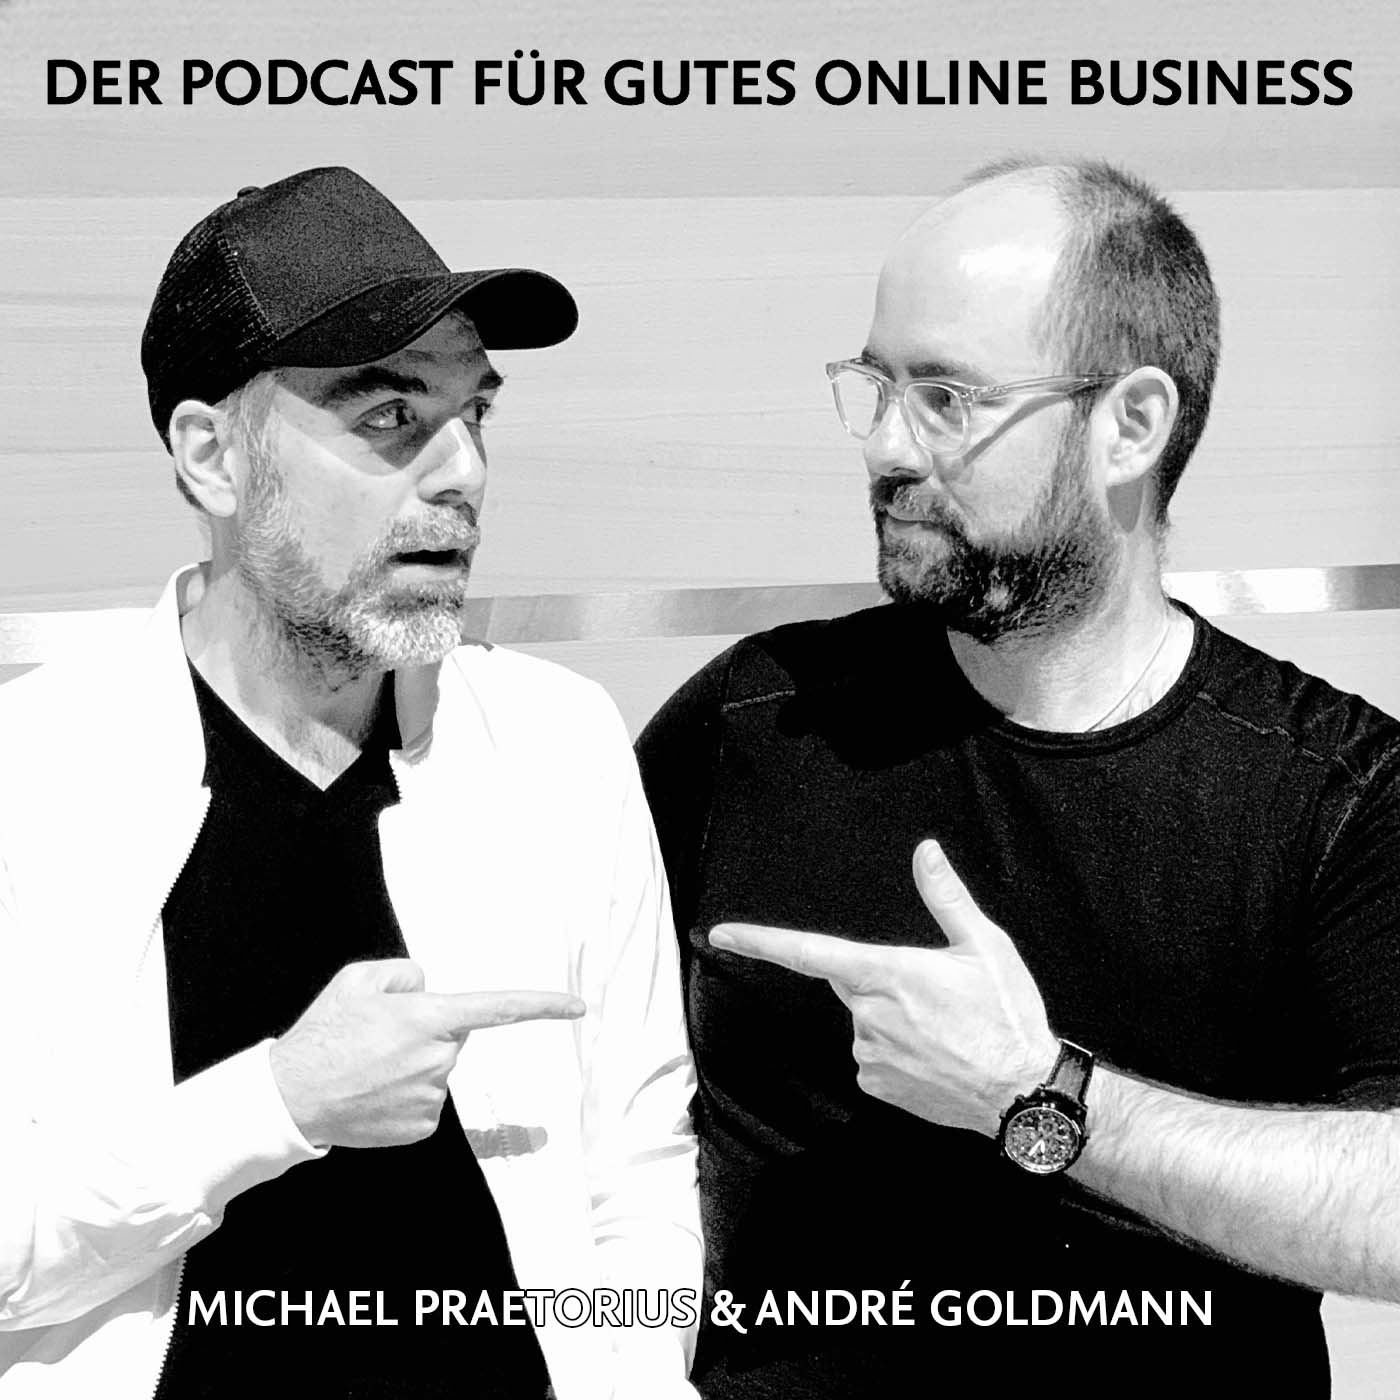 Goldmann & Praetorius – Der Podcast für gutes Online-Marketing